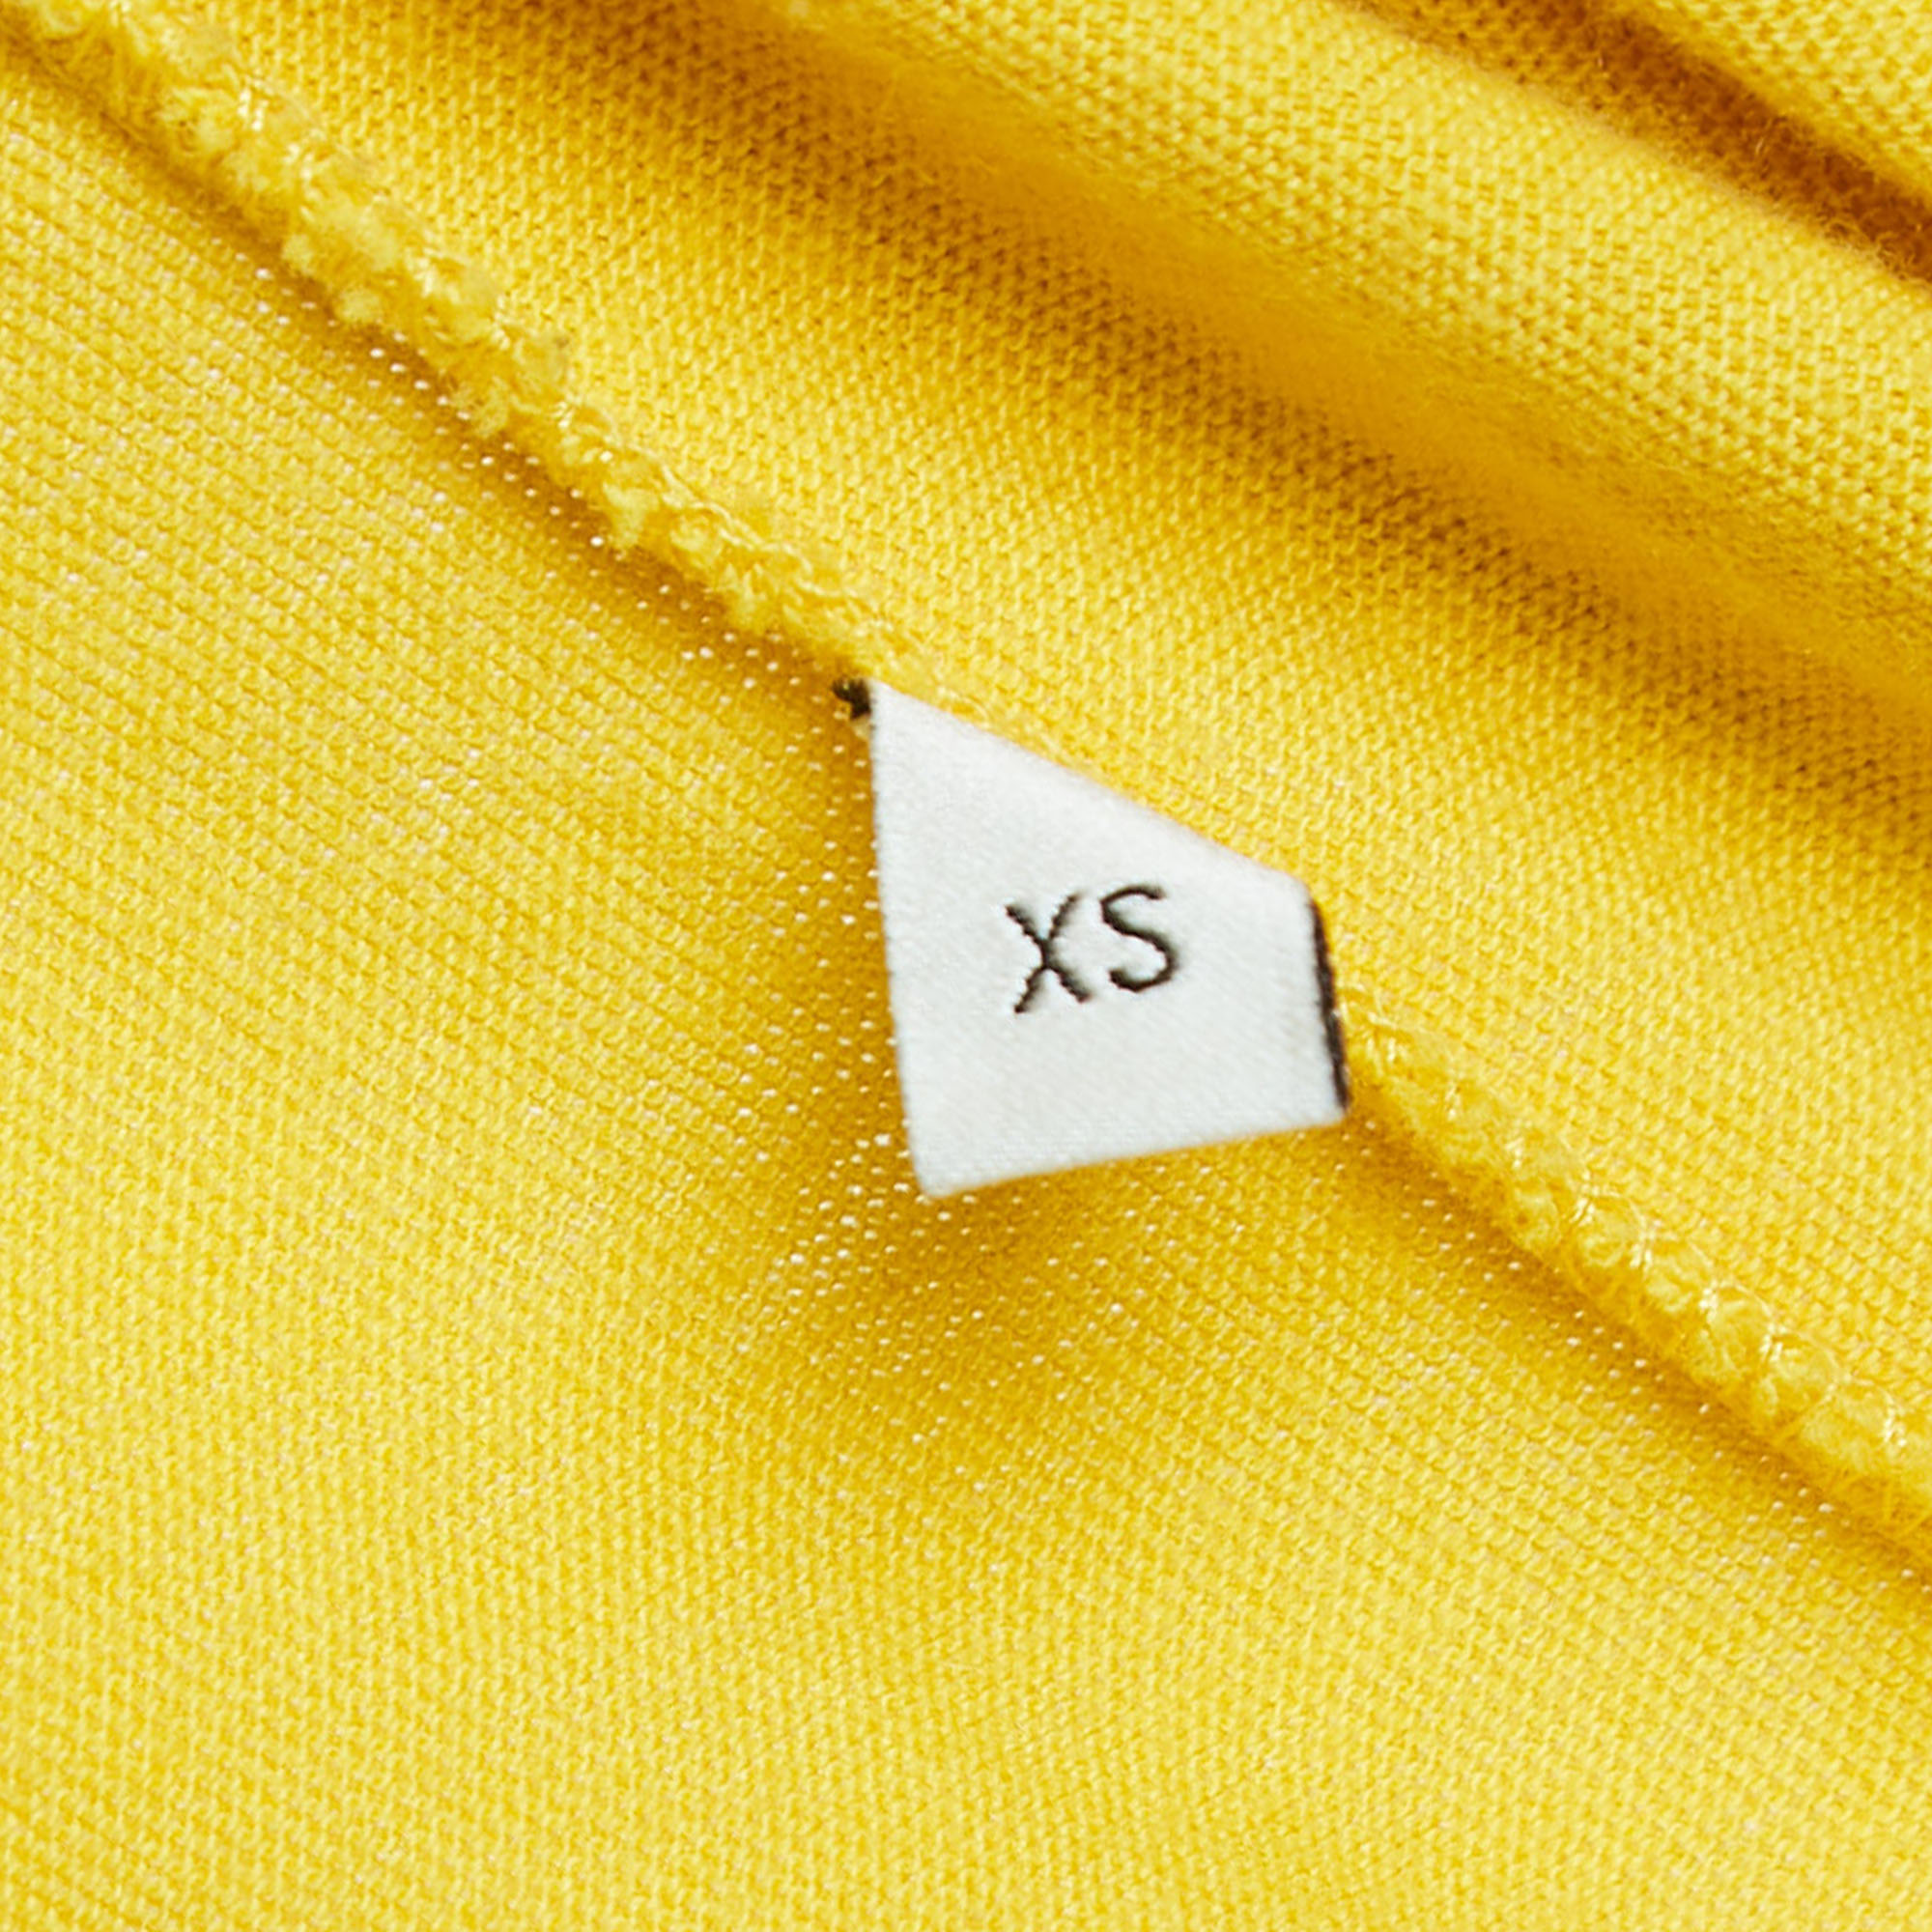 Gucci Yellow Distressed Cotton Graffiti Logo Print T-Shirt XS